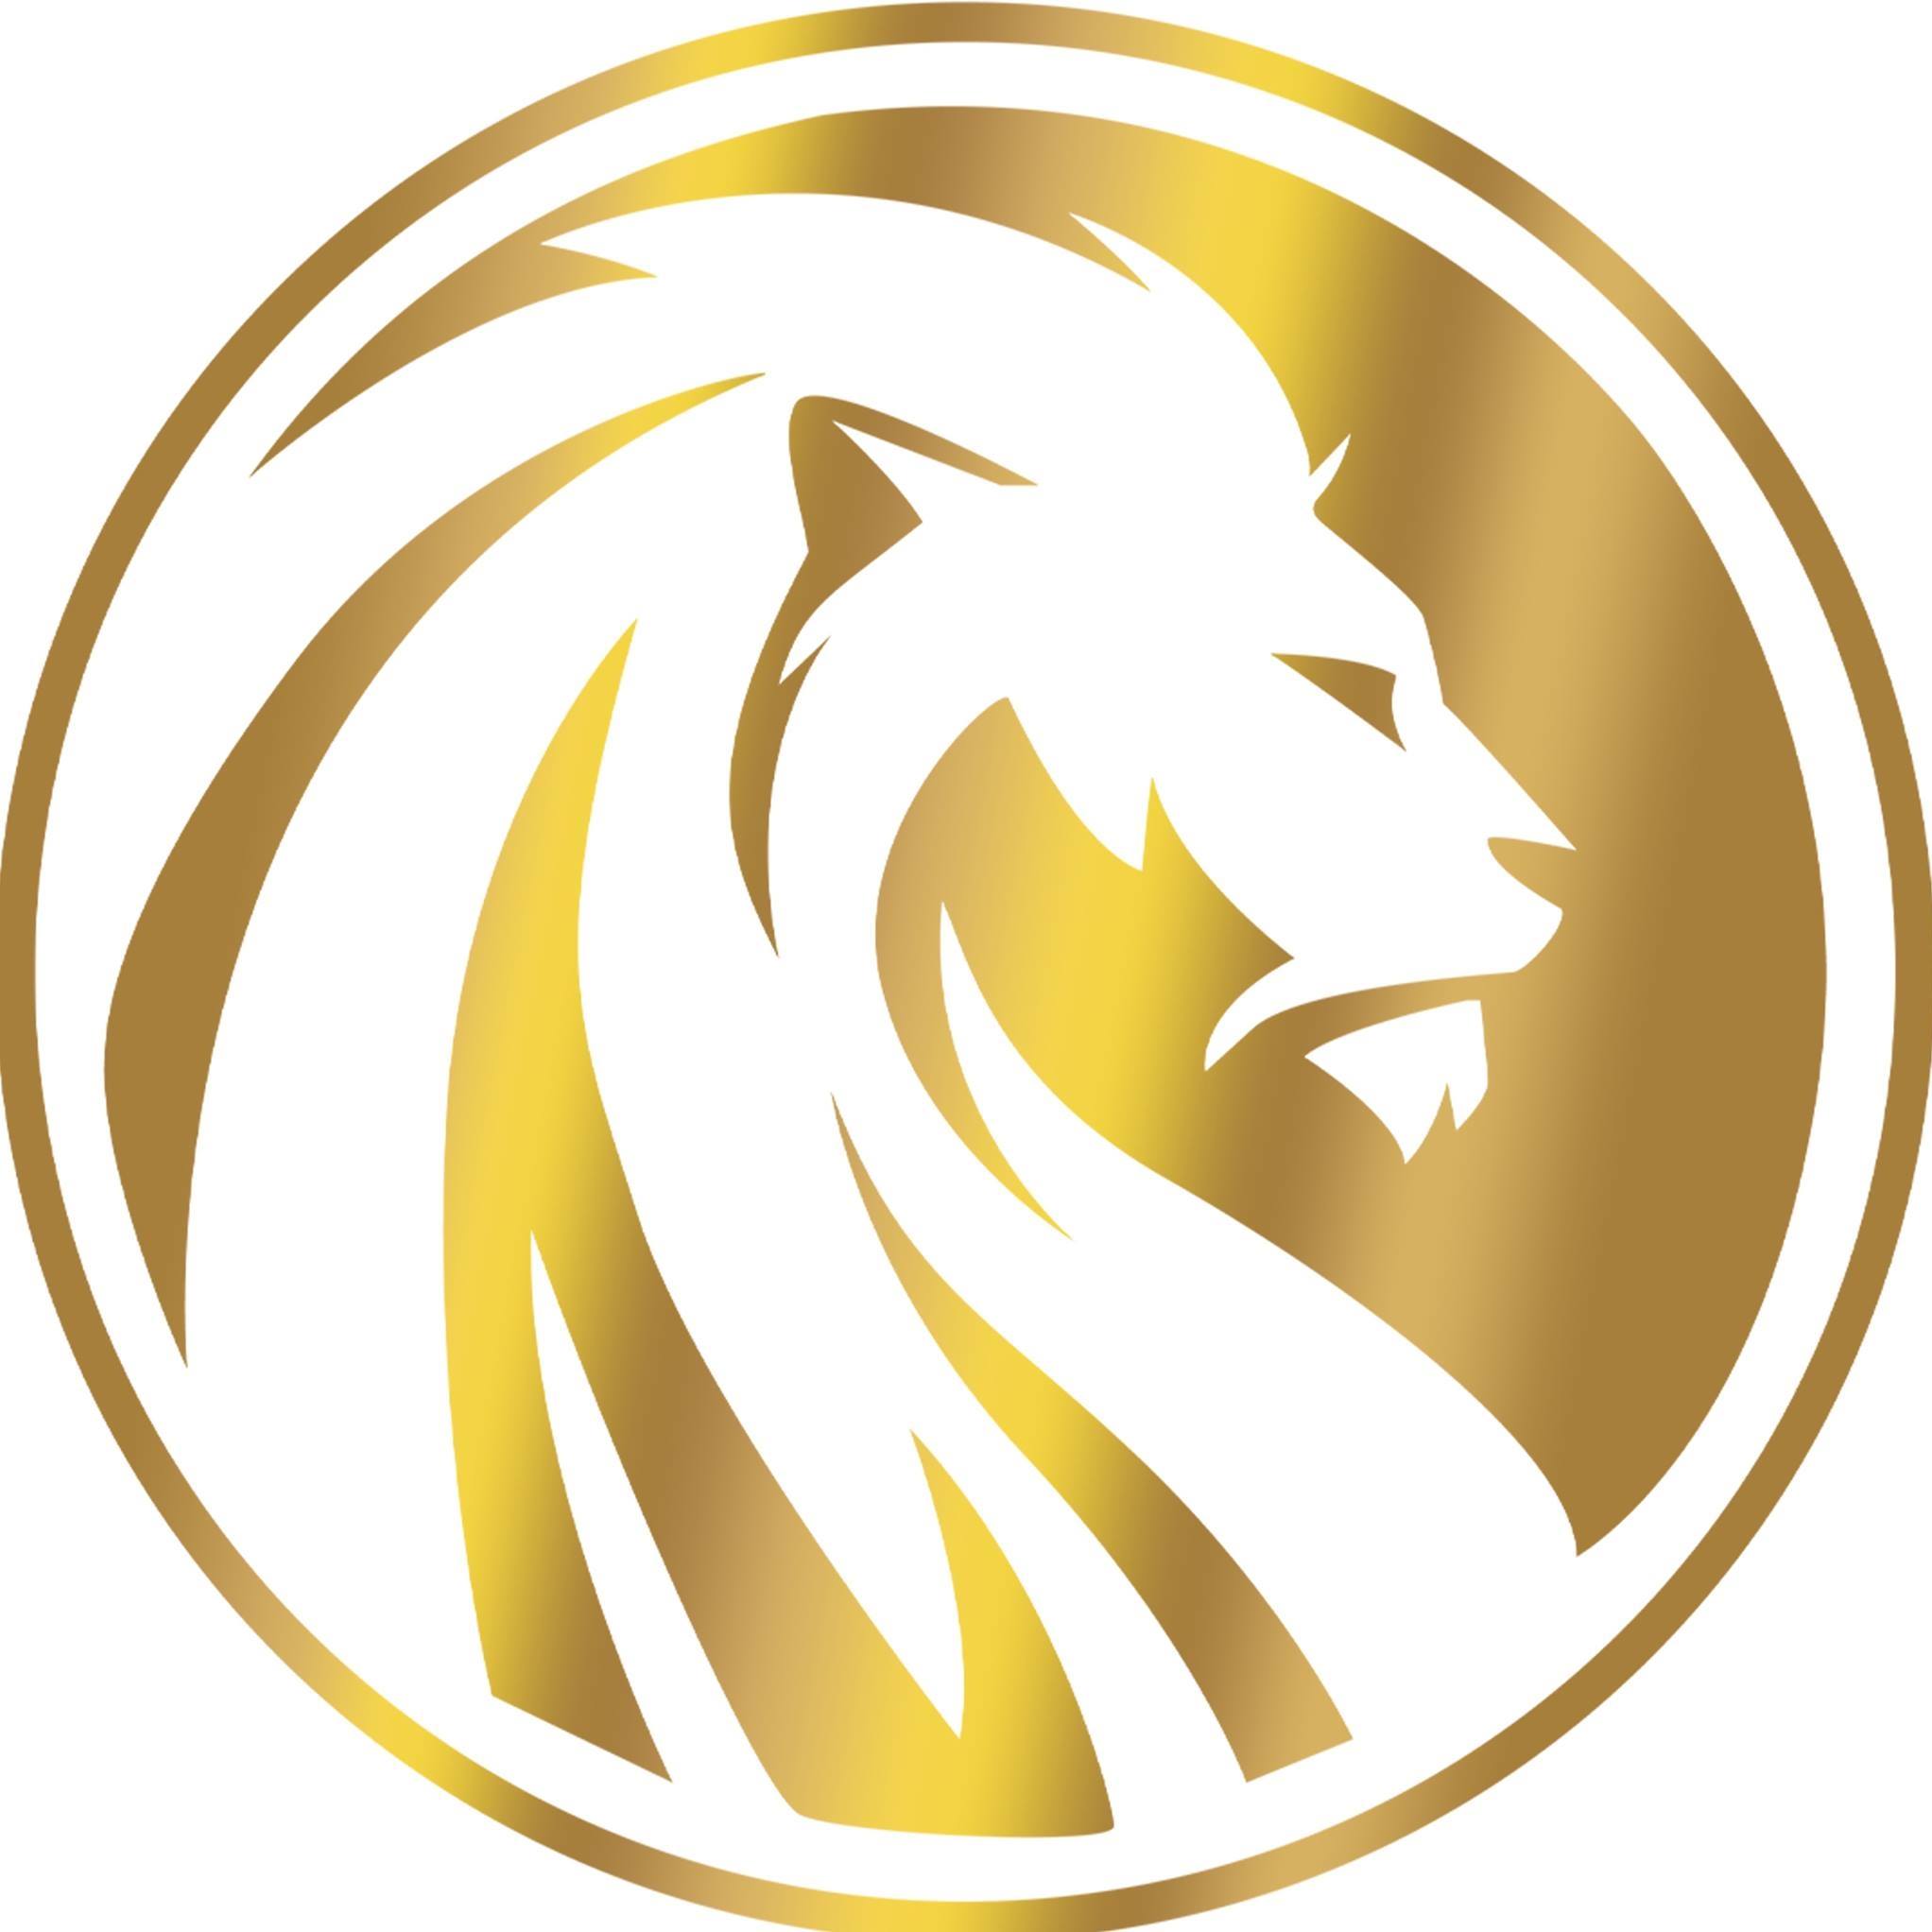 Company logo of Simba 7 Media